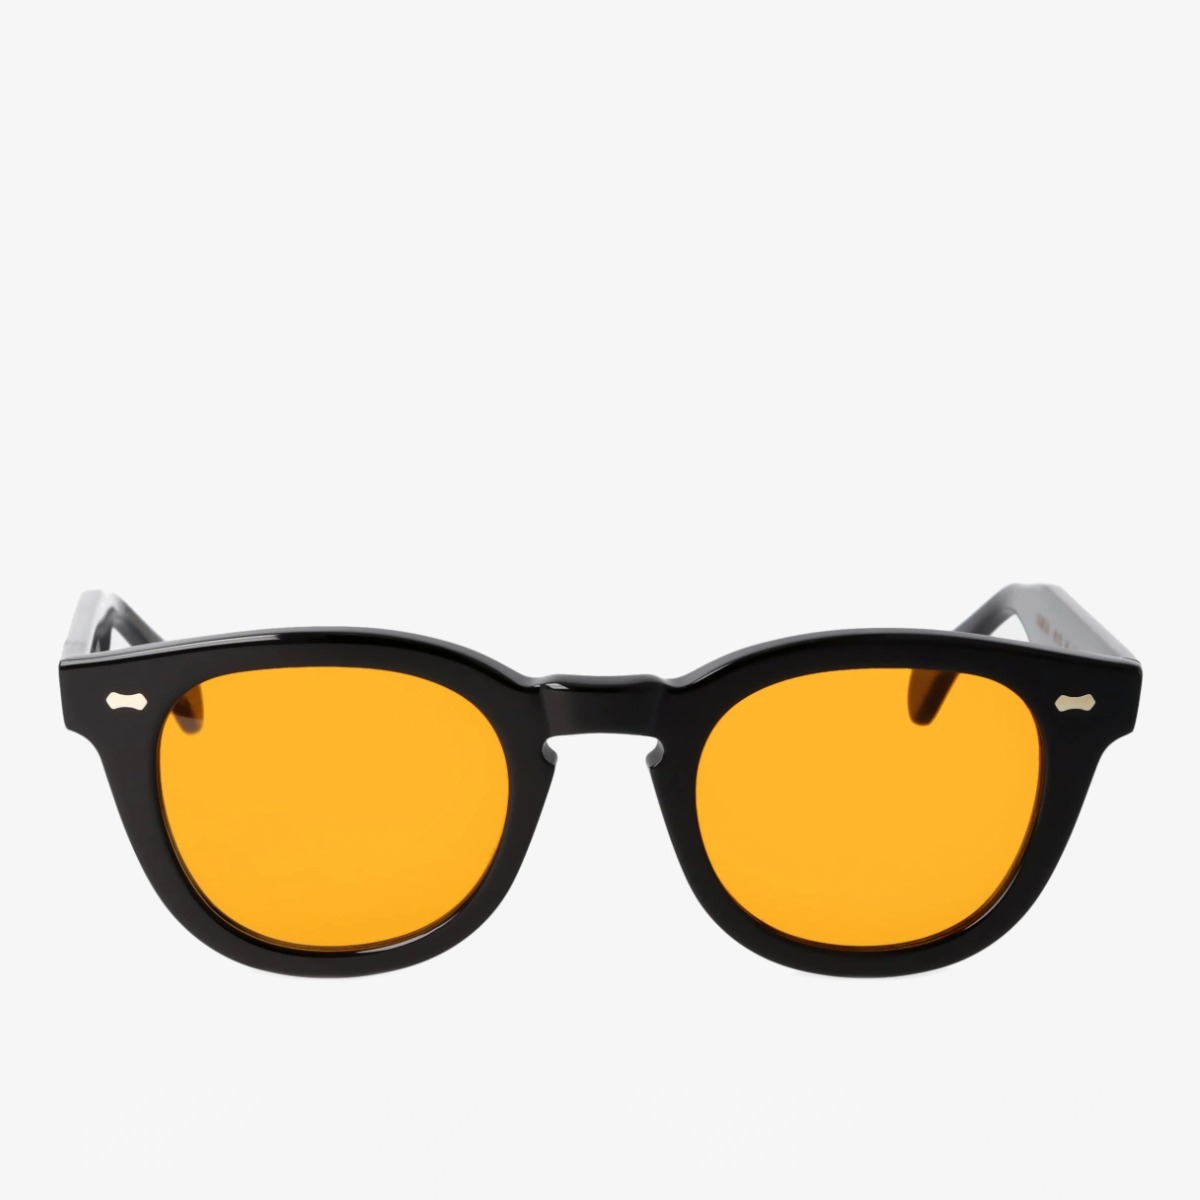 TBD Eyewear Donegal black frame orange lenses sunglasses